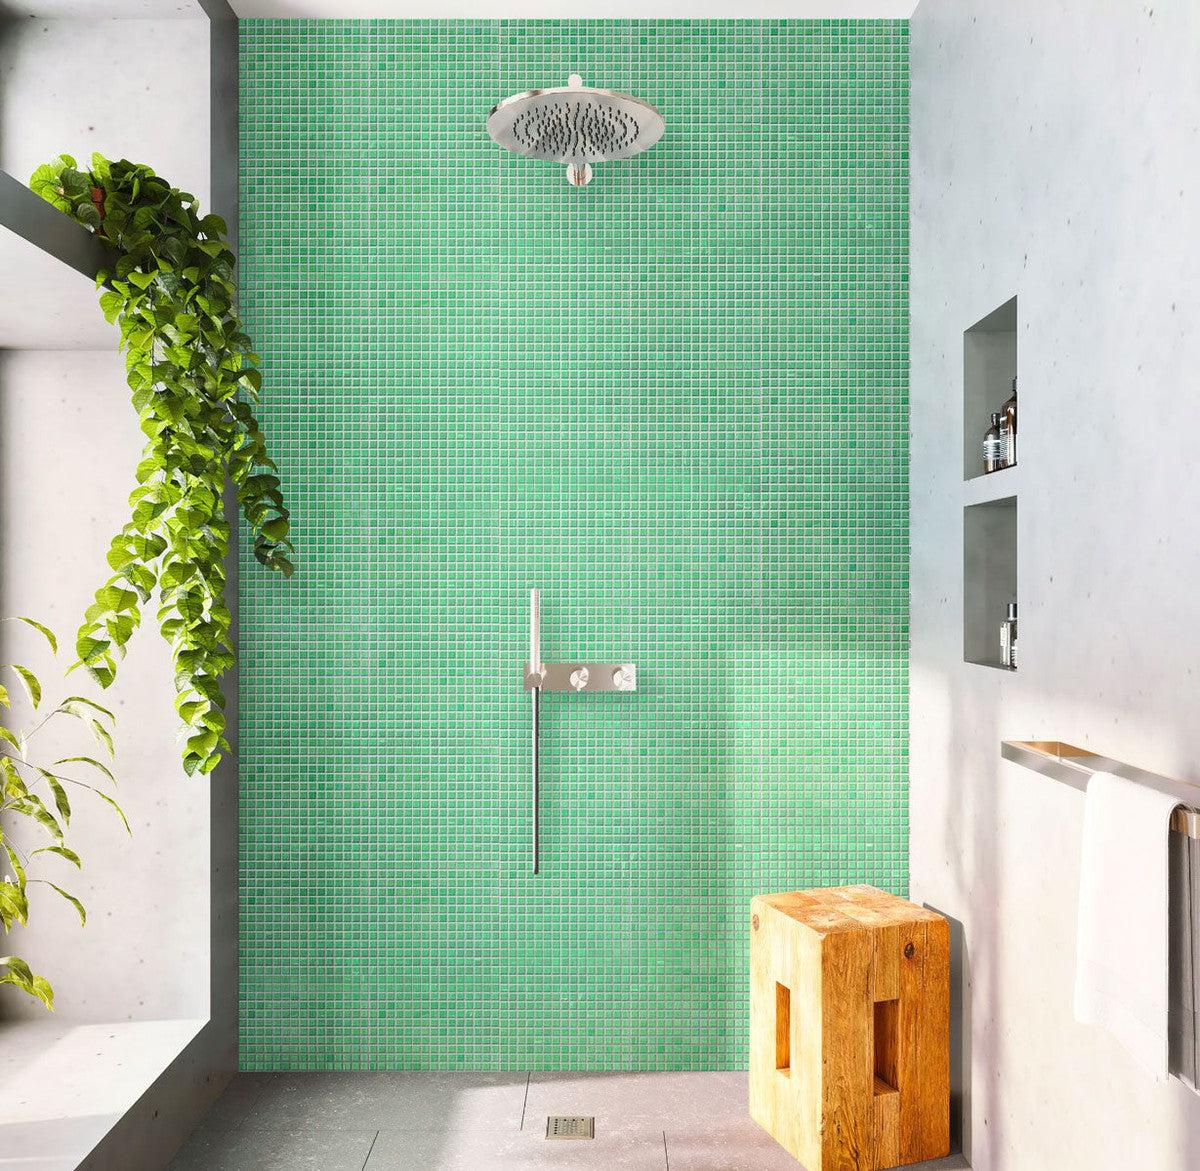 Green Pear Squares Glass Pool Tile Shower Backsplash